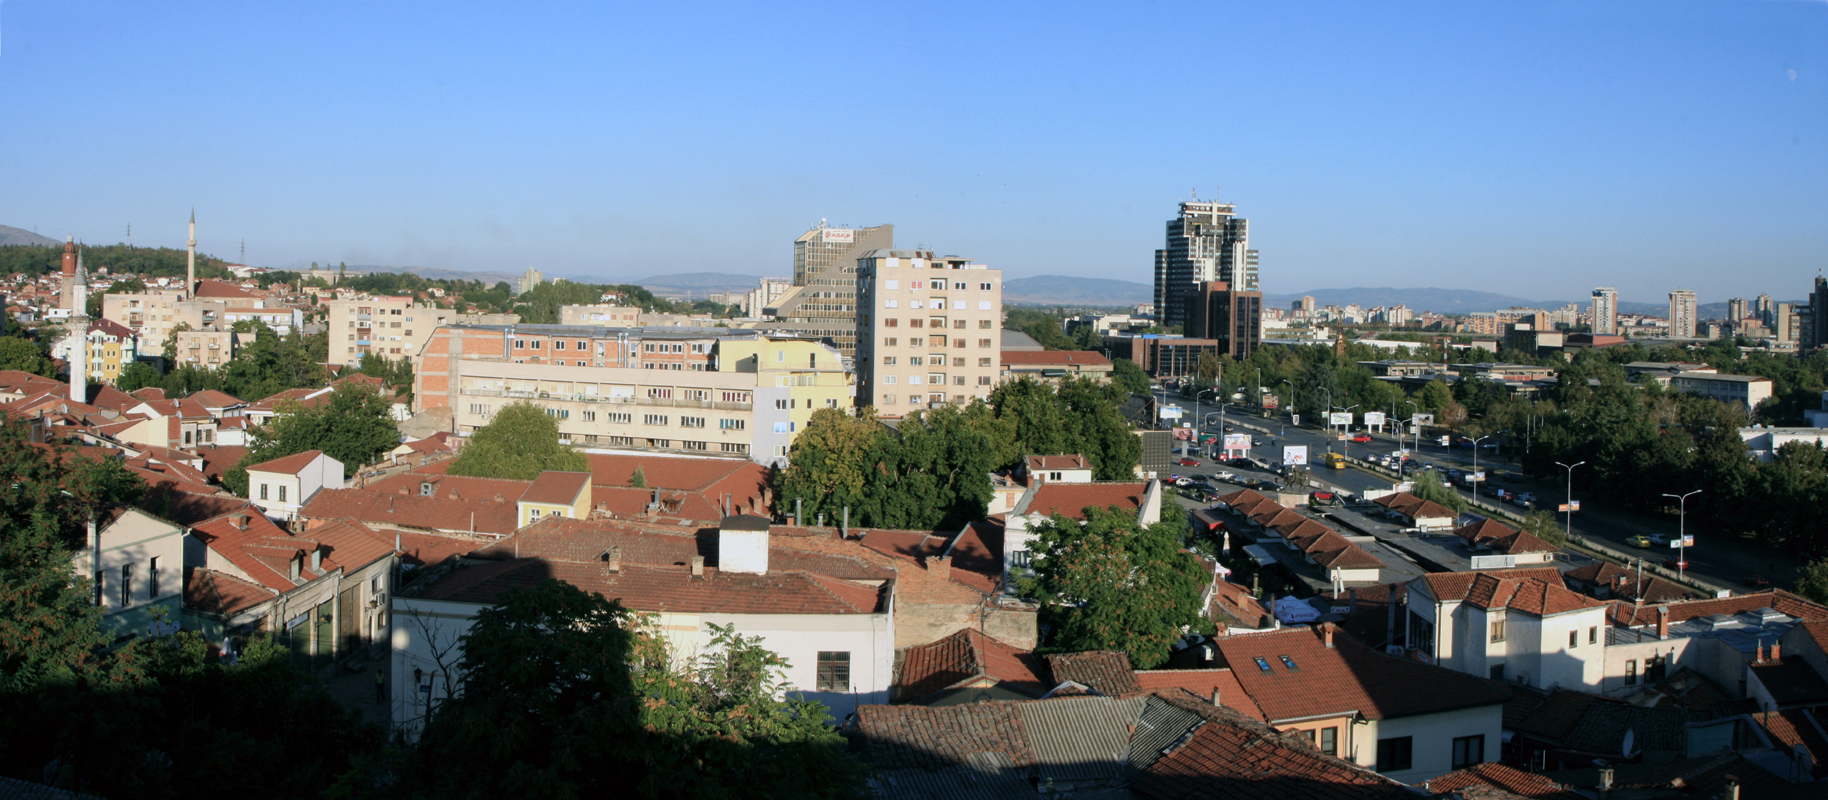 Скопье, вид из крепости.